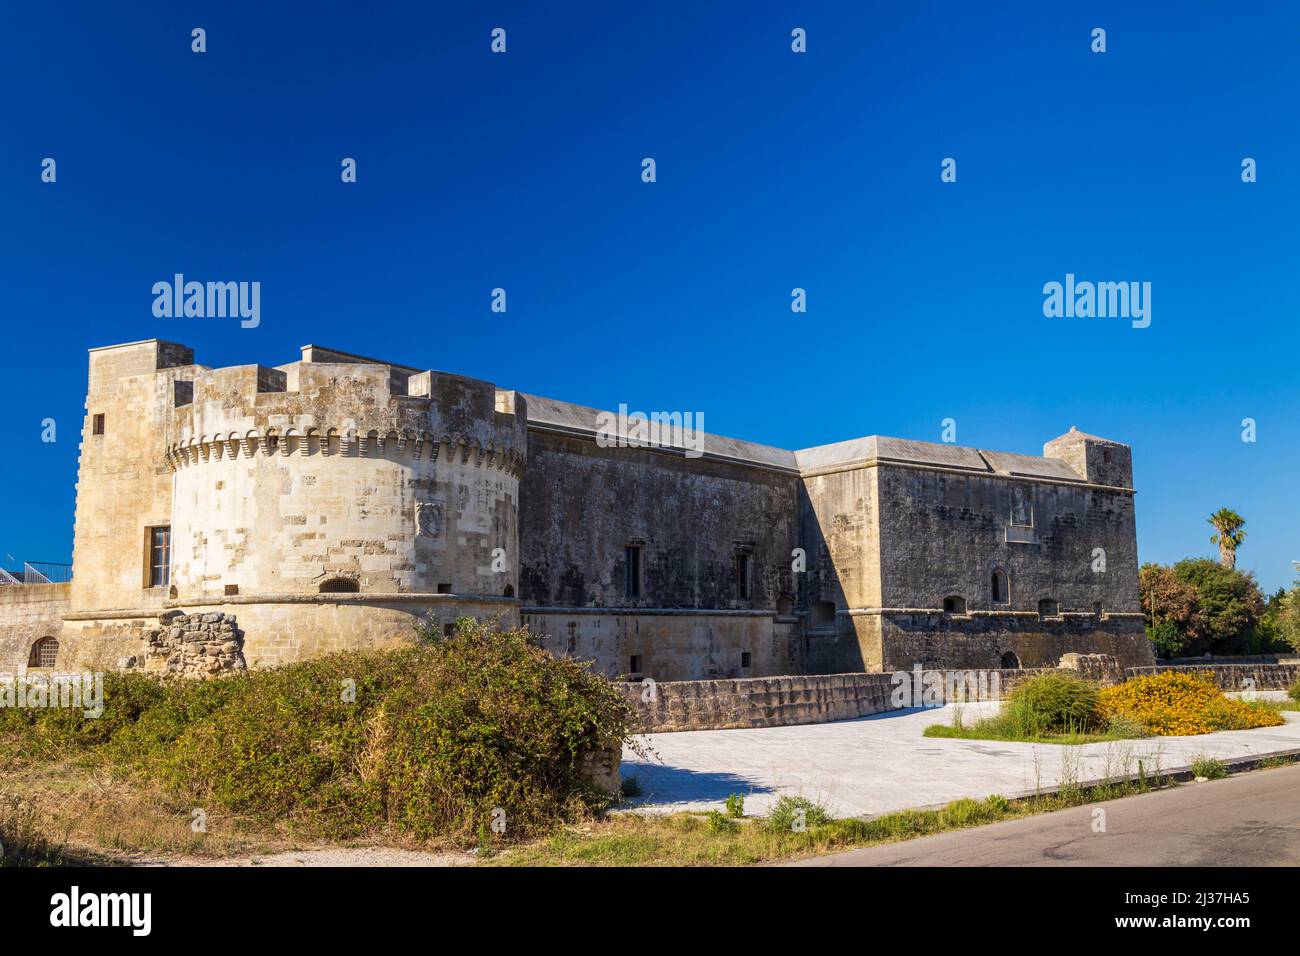 Castillo de Castello di Acaya, Provincia de Lecce, Apulia, Italia. Foto de stock